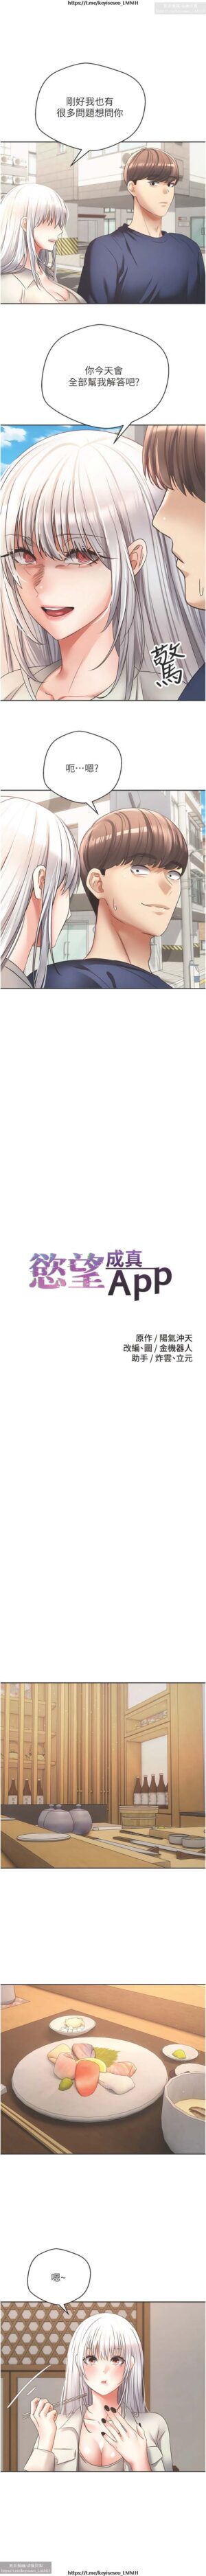 欲望成真App 28-55